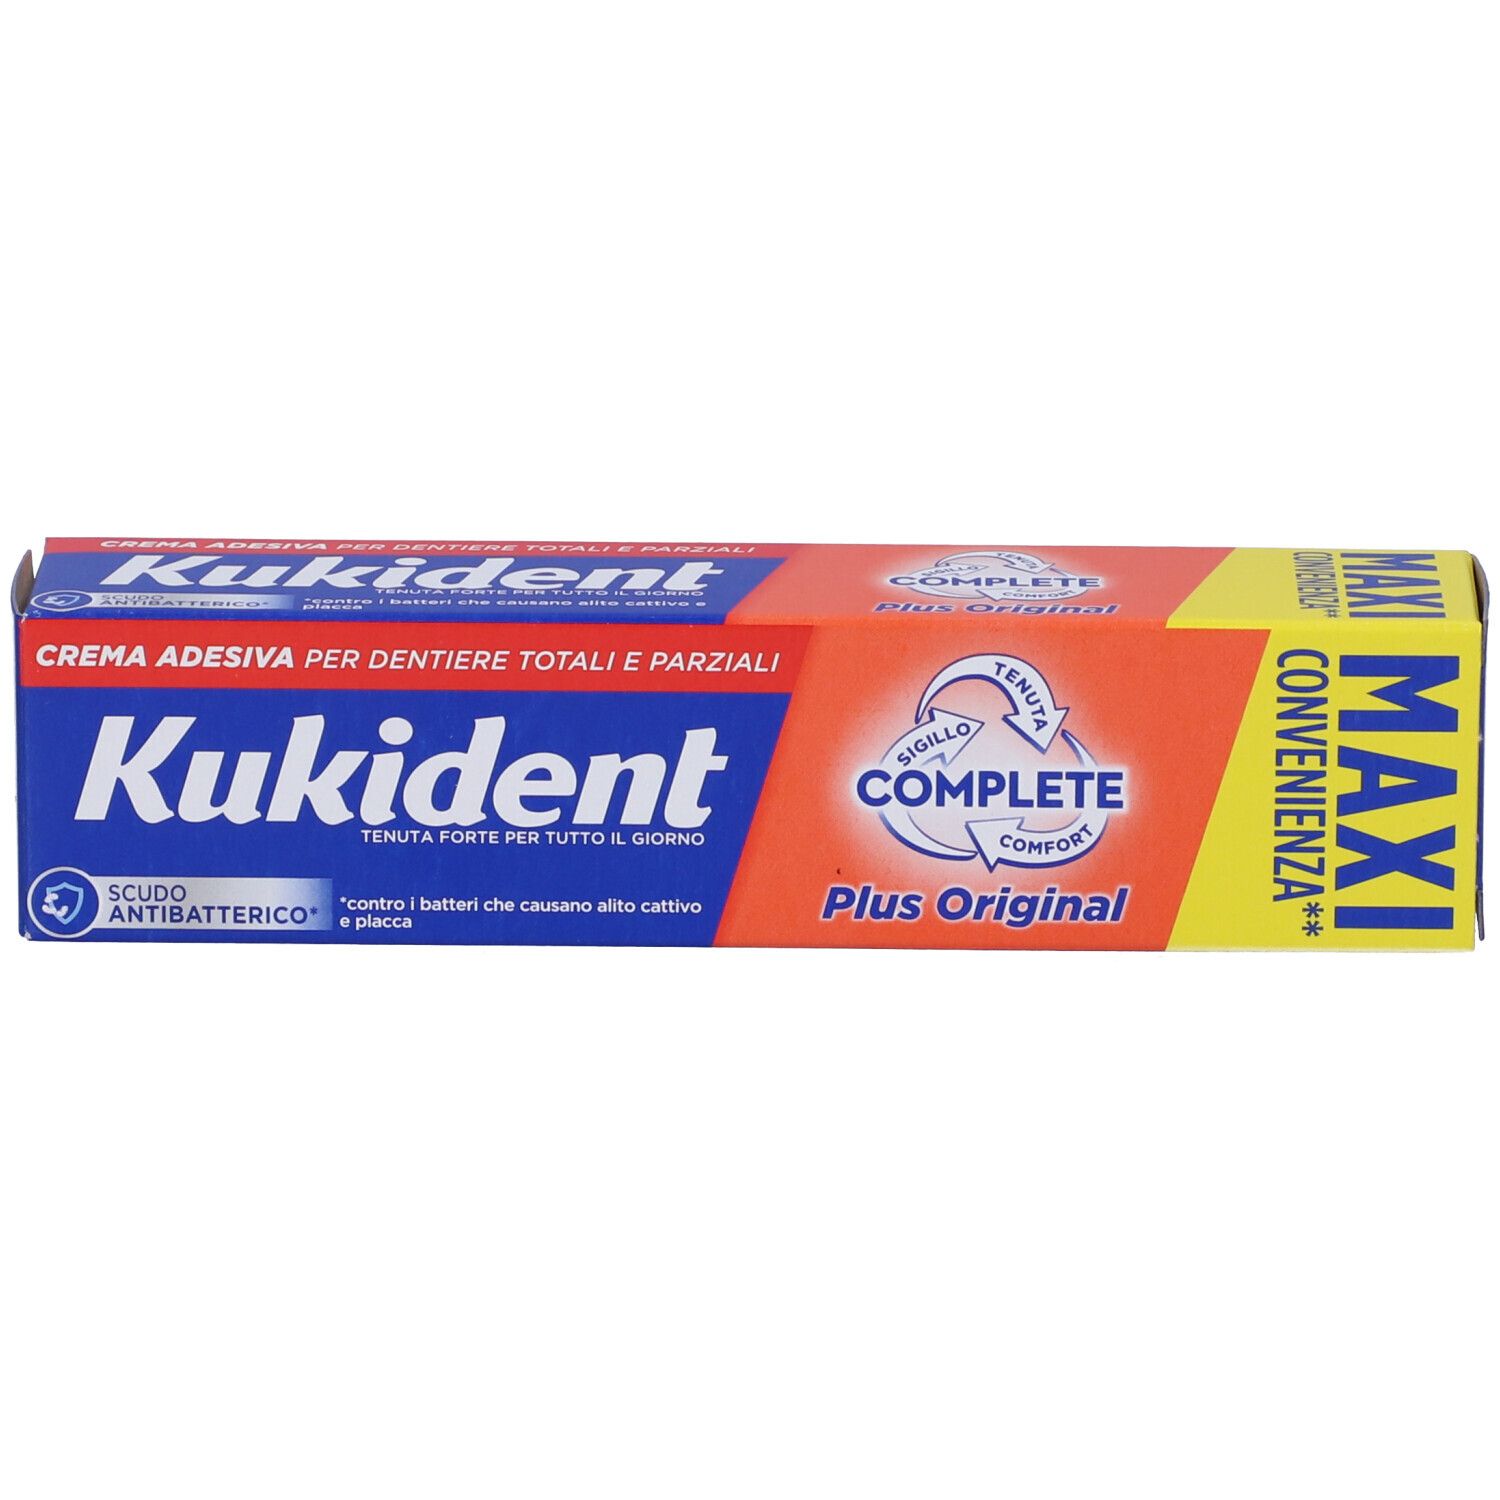 Kukident Complete Plus Original Crema Adesiva Per Dentiere Totali e Parziali Aroma Menta Leggera